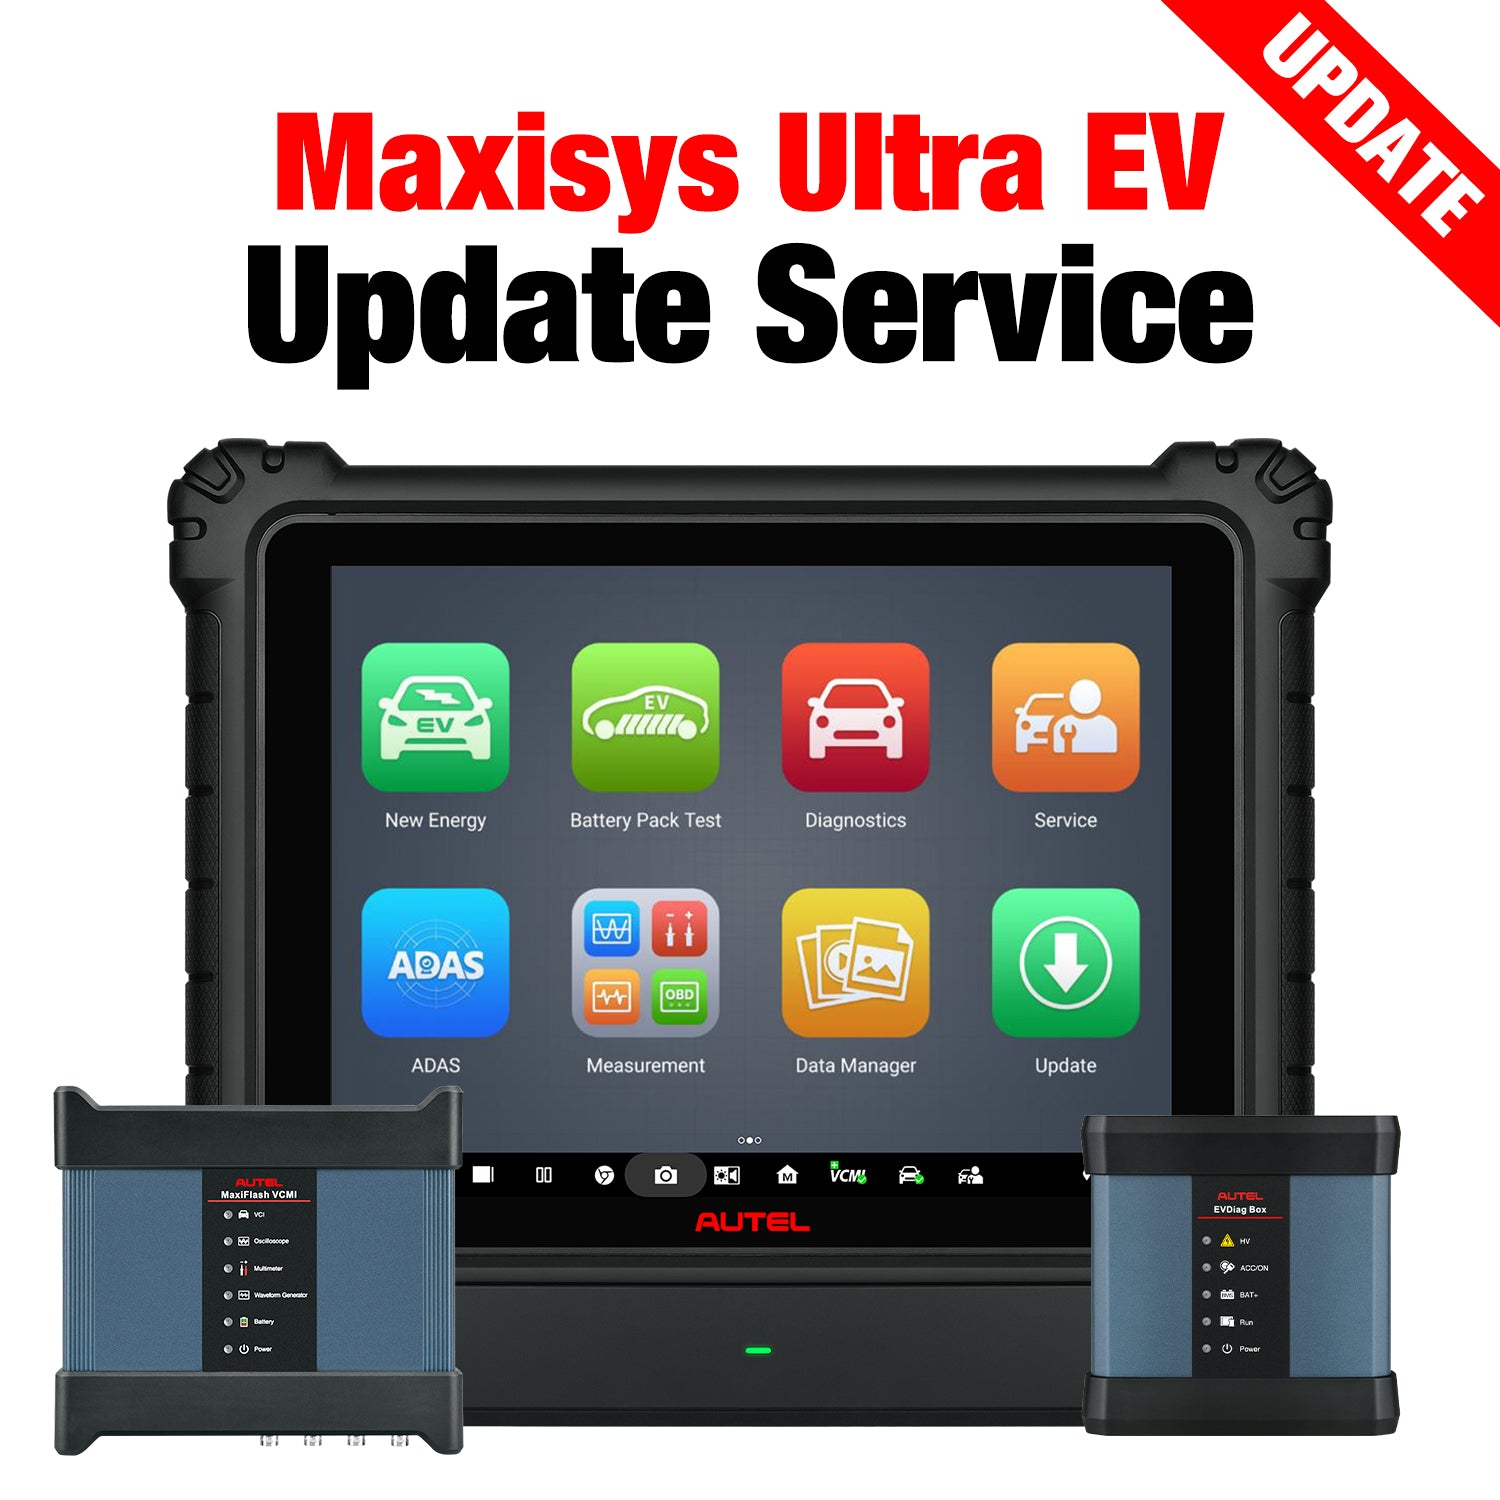 maxisys ultra ev update service